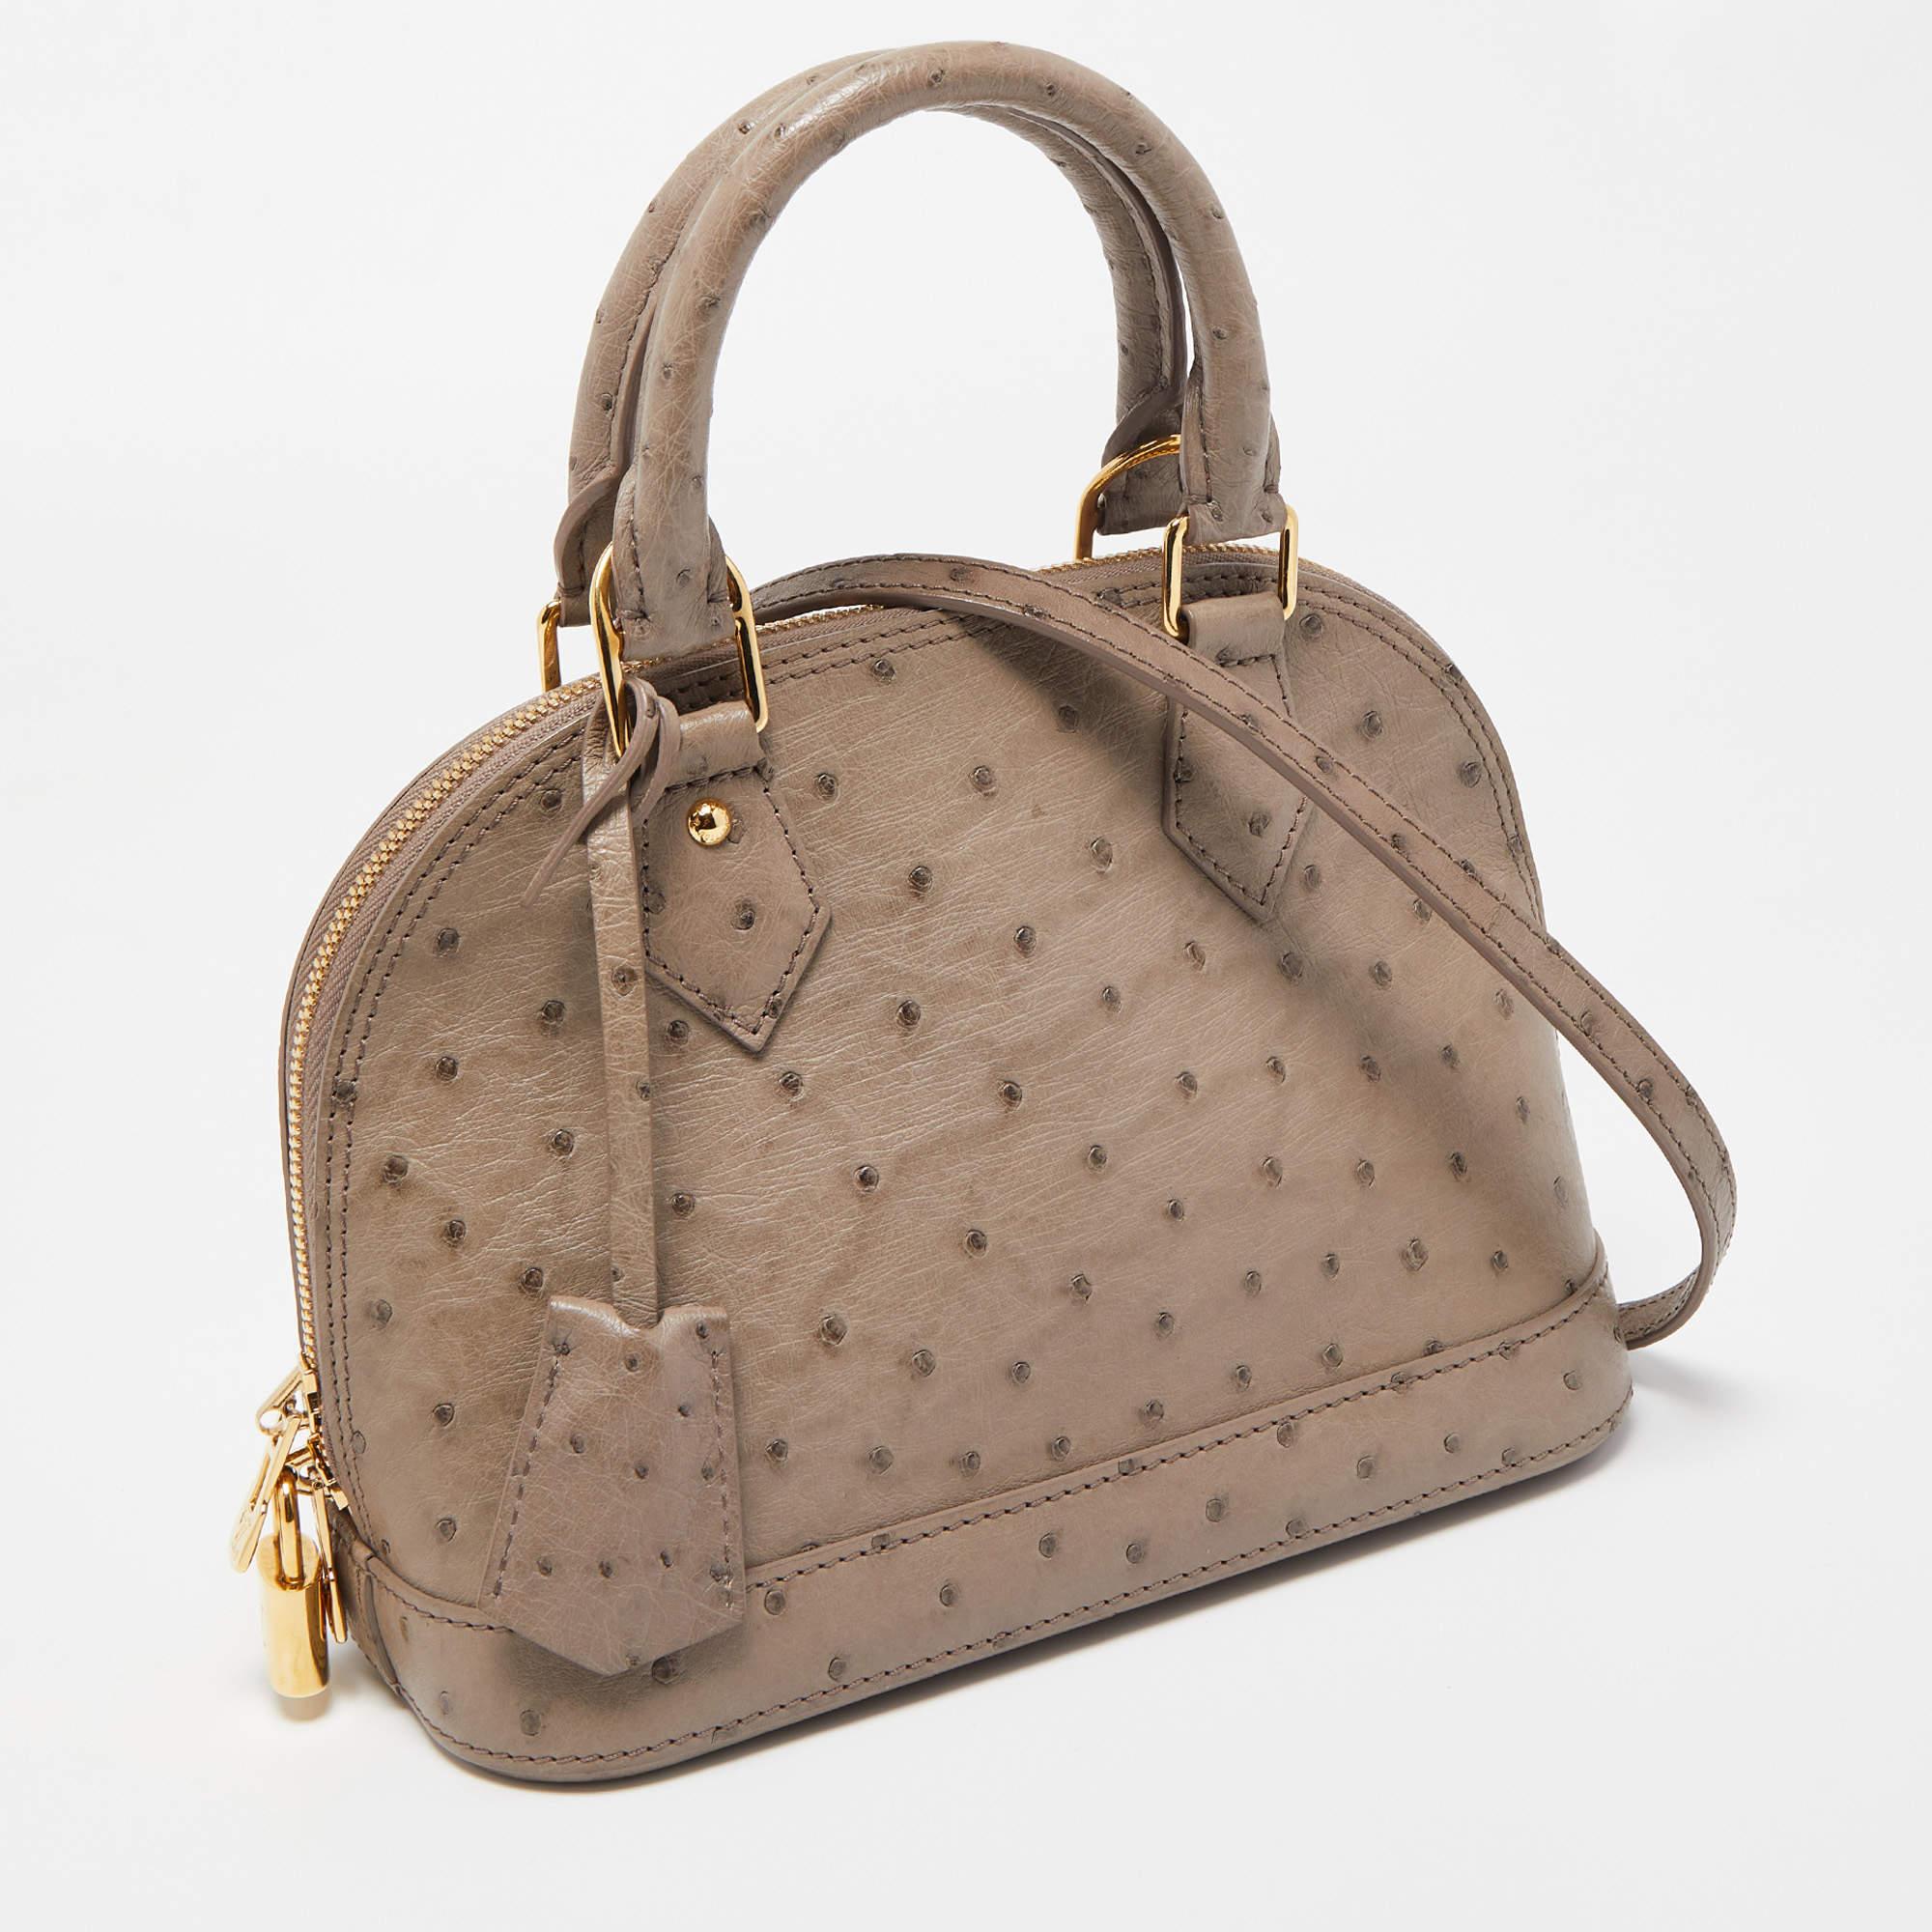 Diese Alma-Tasche stammt aus einer der kultigsten Kollektionen von Louis Vuitton und besticht durch exquisite Handwerkskunst und historische Details. Sie ist aus Straußenleder gefertigt und verfügt über zwei obere Griffe, einen Schulterriemen und